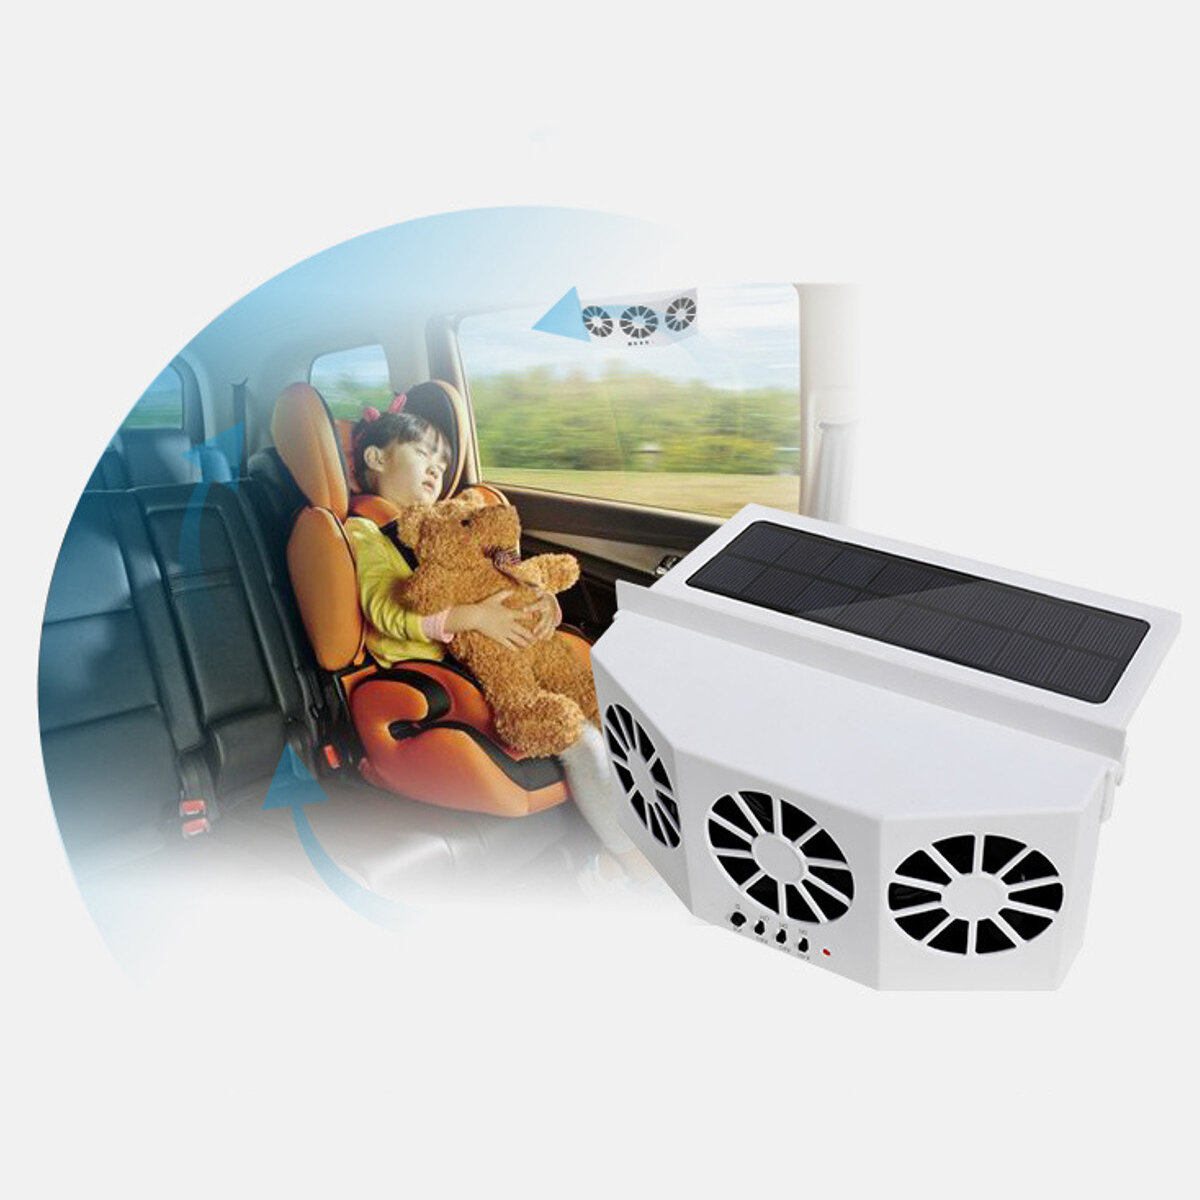 4500Rpm Solar Powered Coche Auto Vehículo Ventana Aire Ventilación Escape Enfriamiento Caja Ventilación Ventilador para